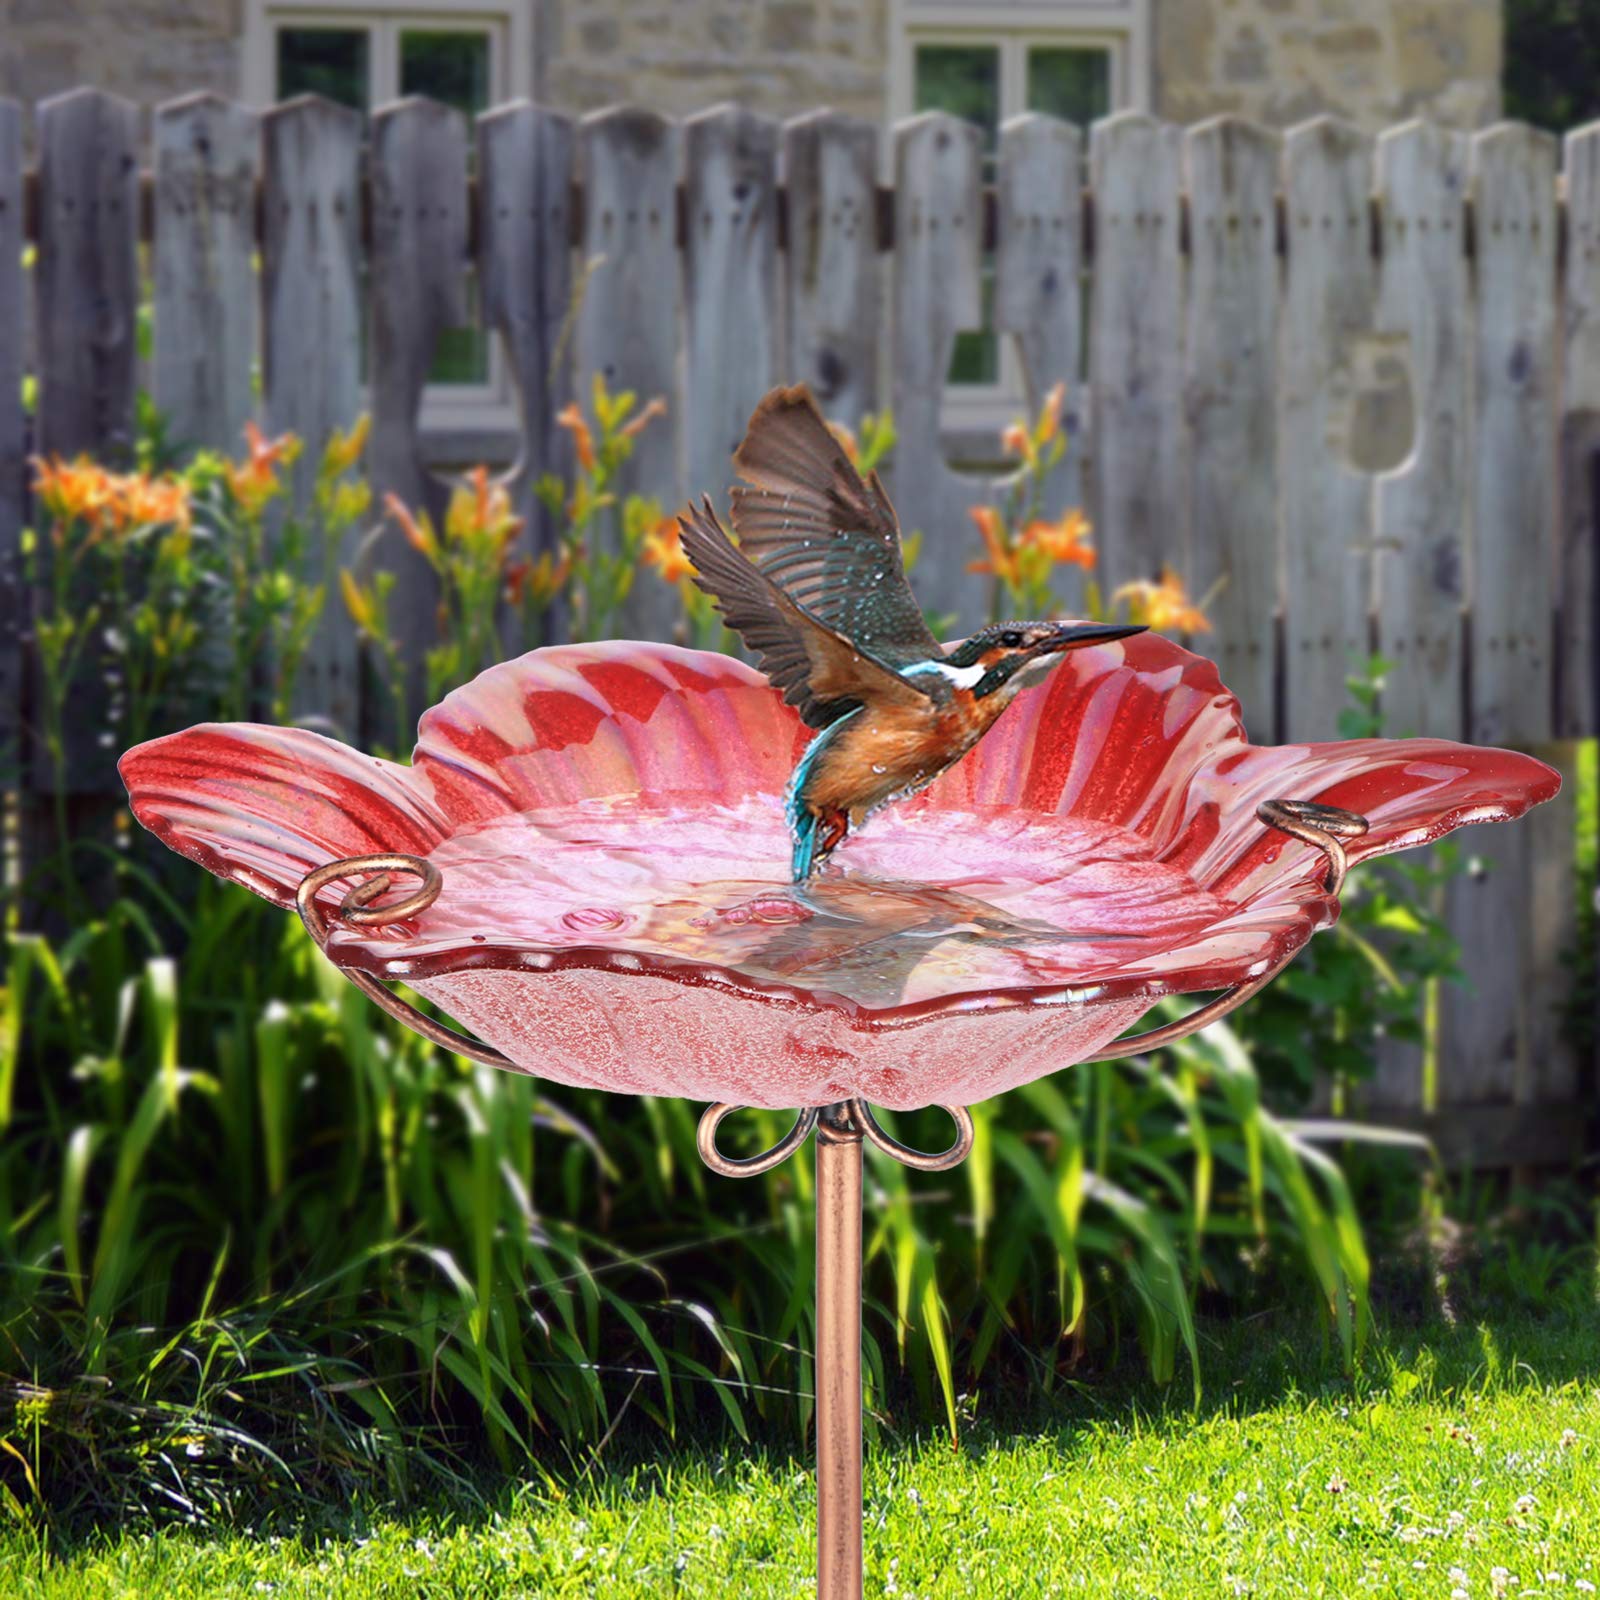 Dream Garden Outdoor Bird Bath Glass Birdbath Garden Birdfeeder with Metal Stake Red